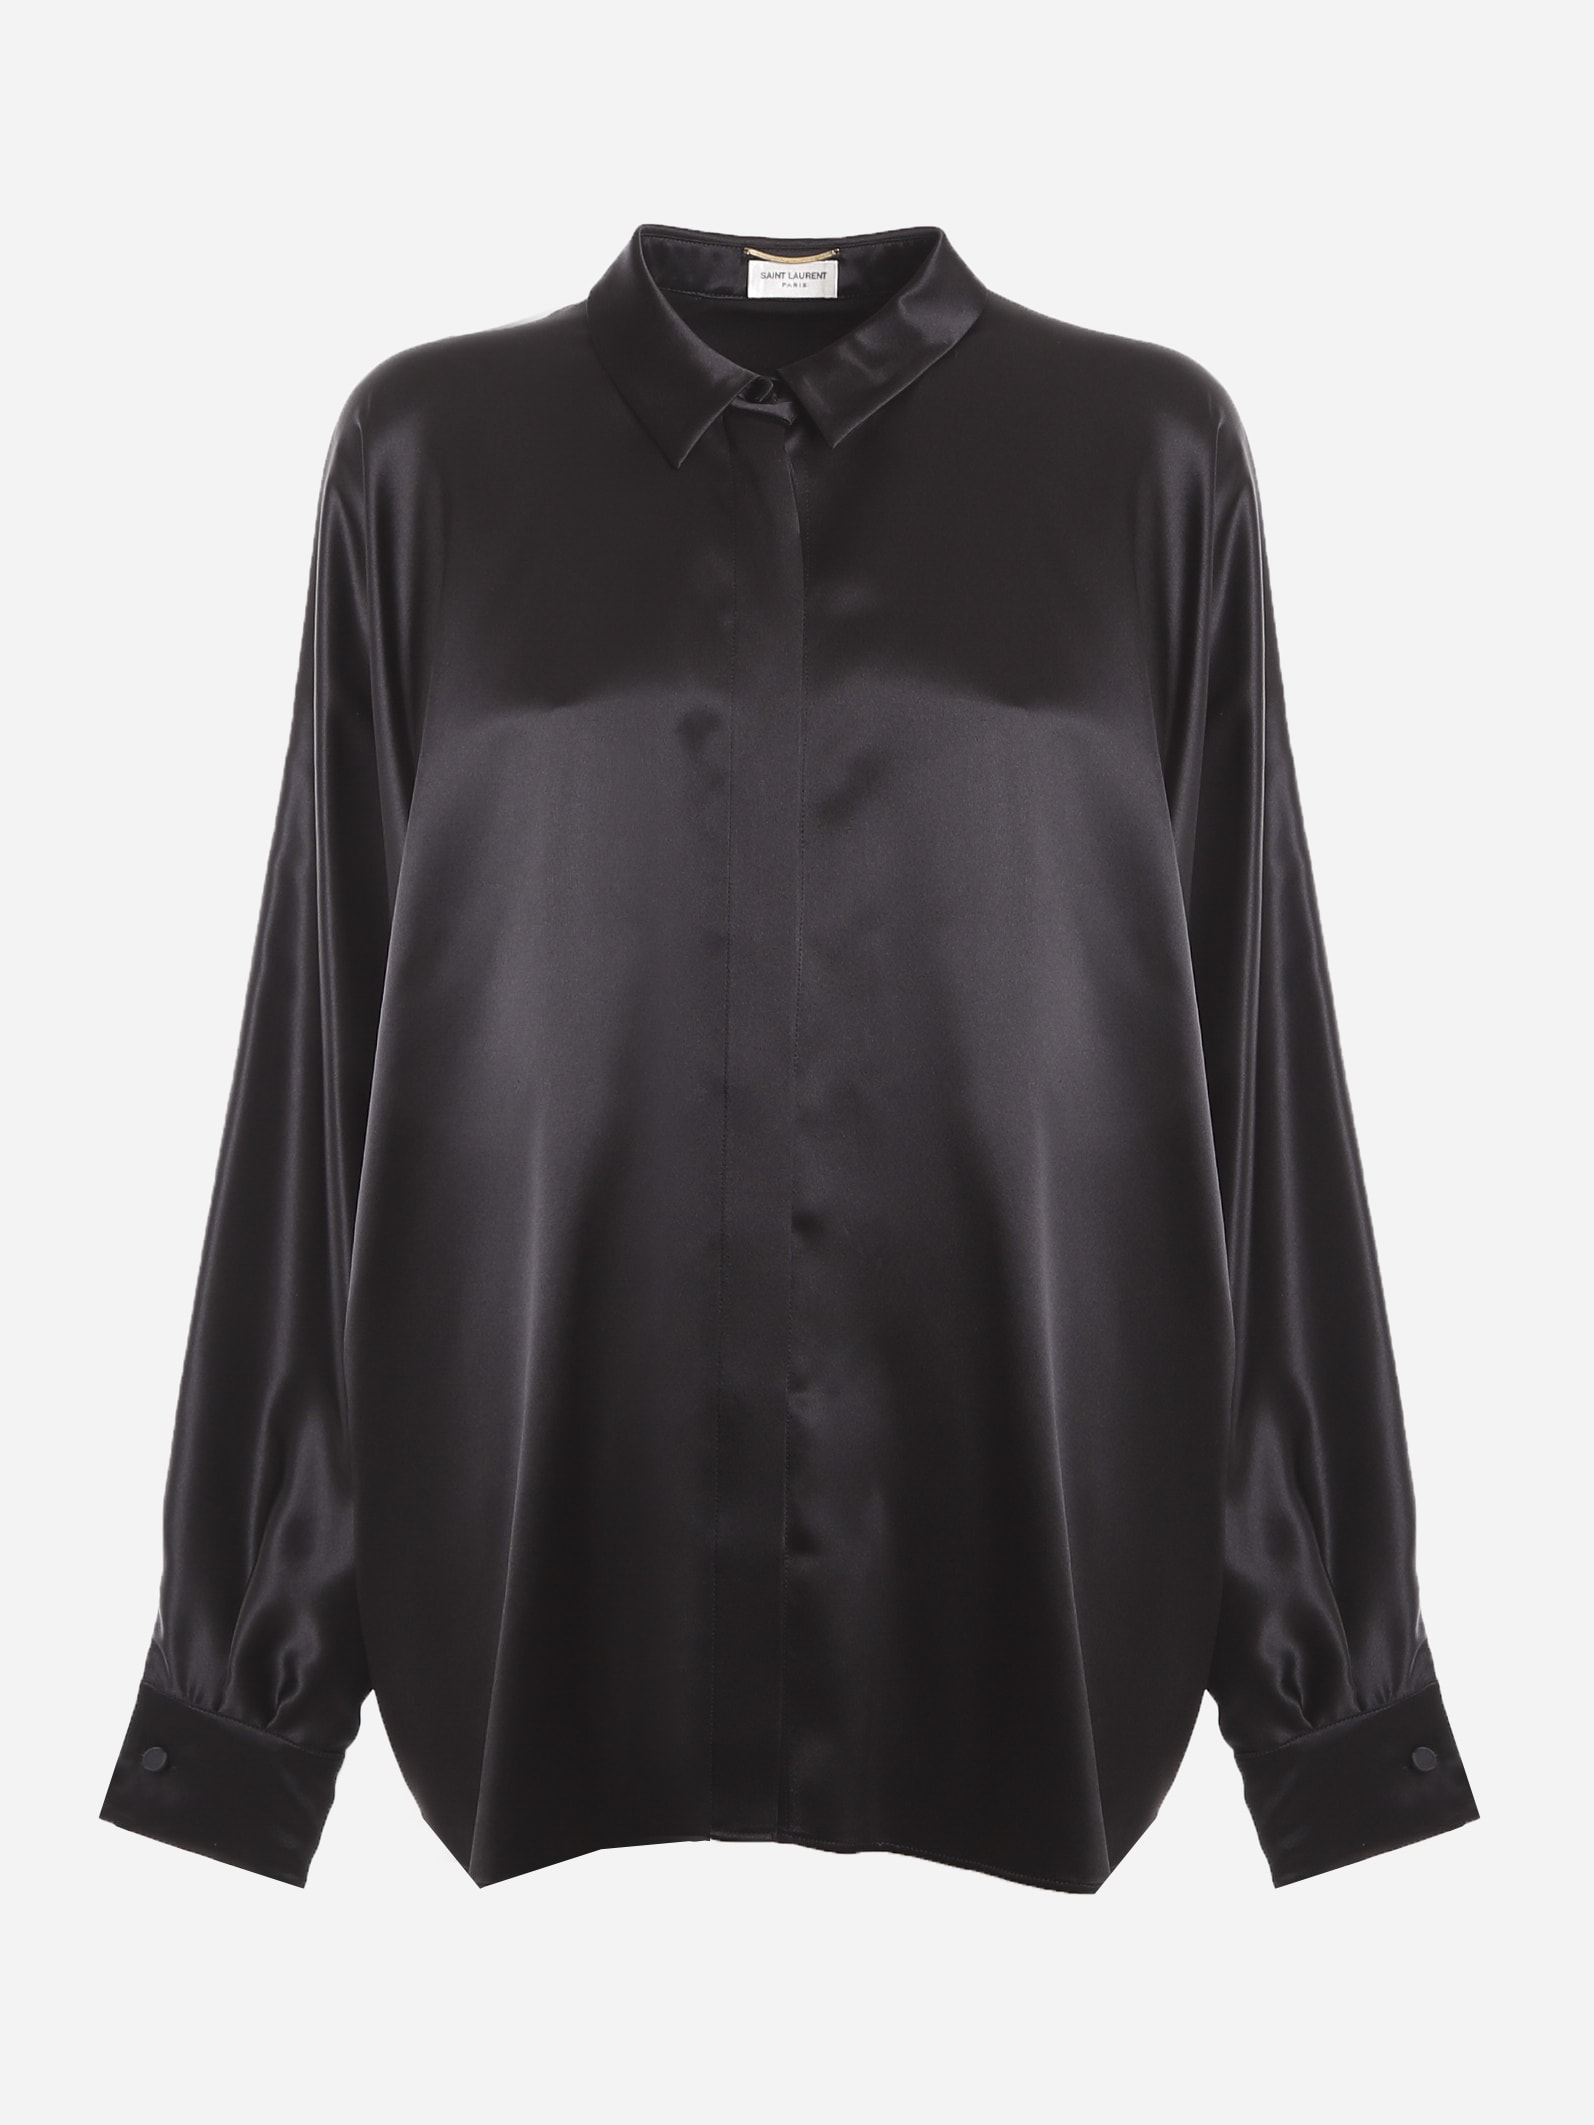 Saint Laurent Oversized Shirt Made Of Silk